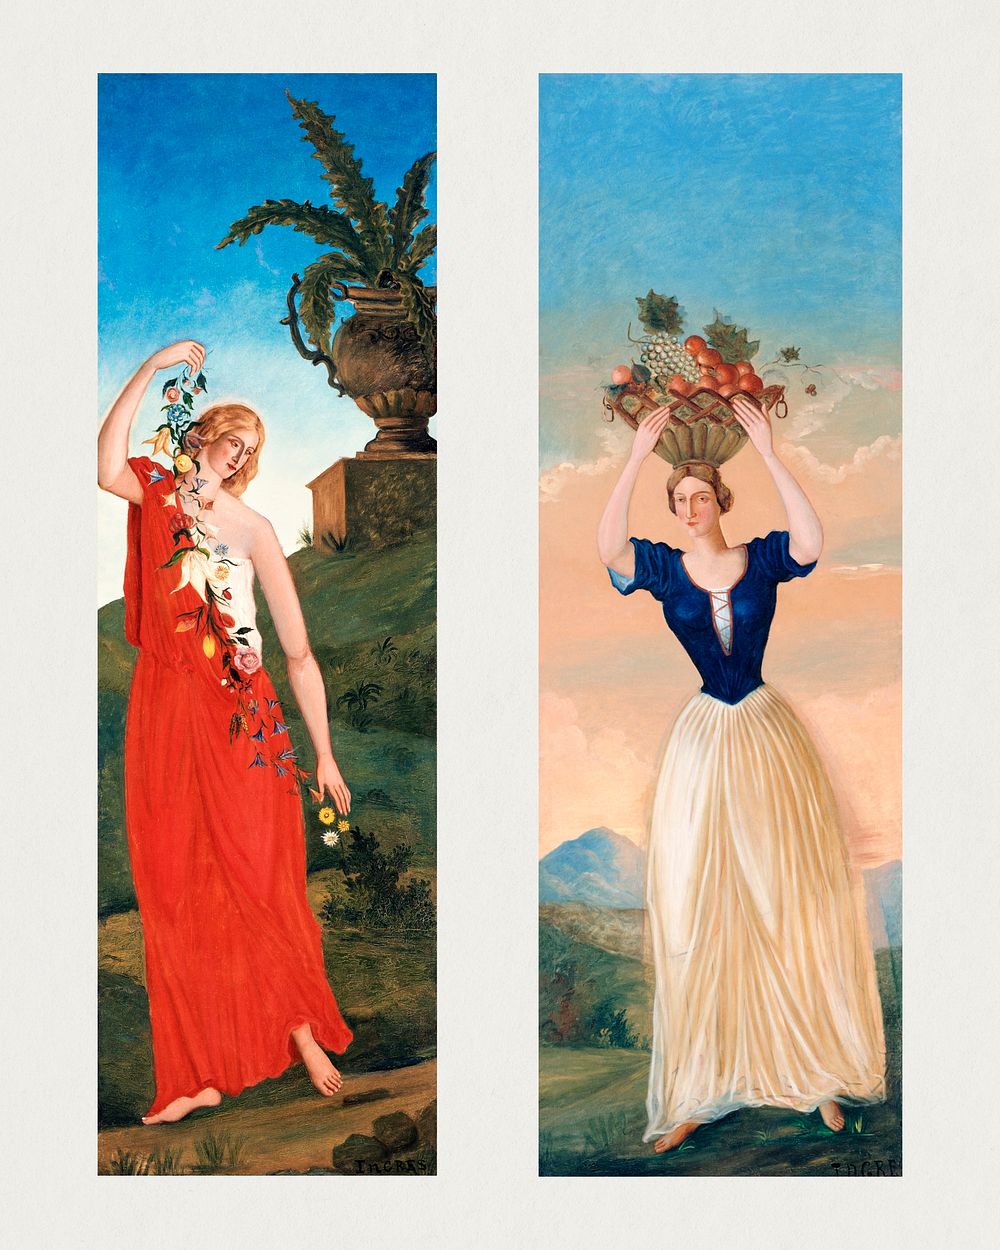 Paul C&eacute;zanne's The four seasons (1860) famouse painting. Original from the Public Institution Paris Mus&eacute;es.…